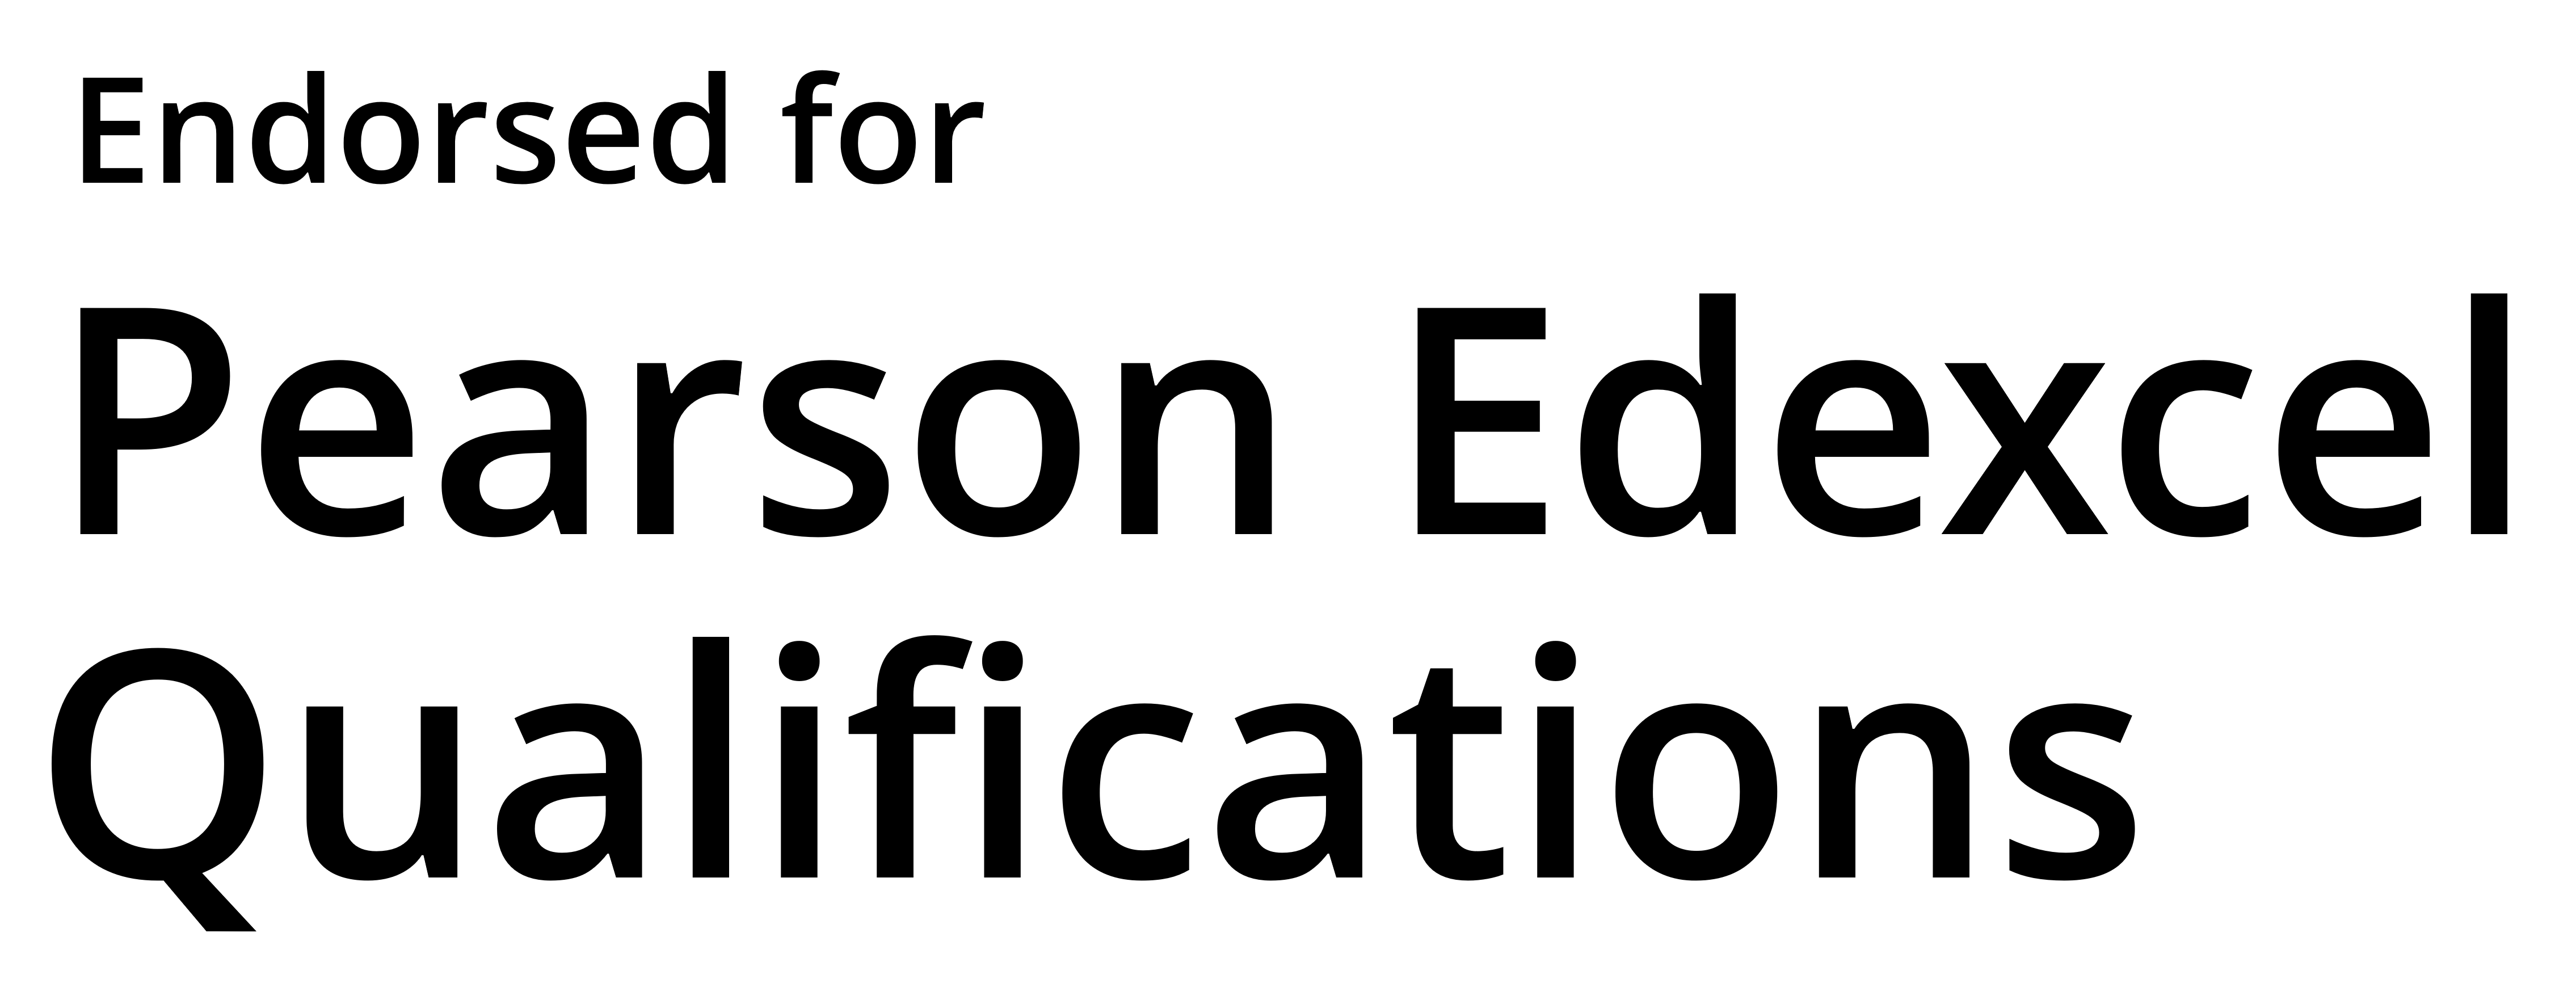 Endorsed for Pearson Edexcel Qualifications